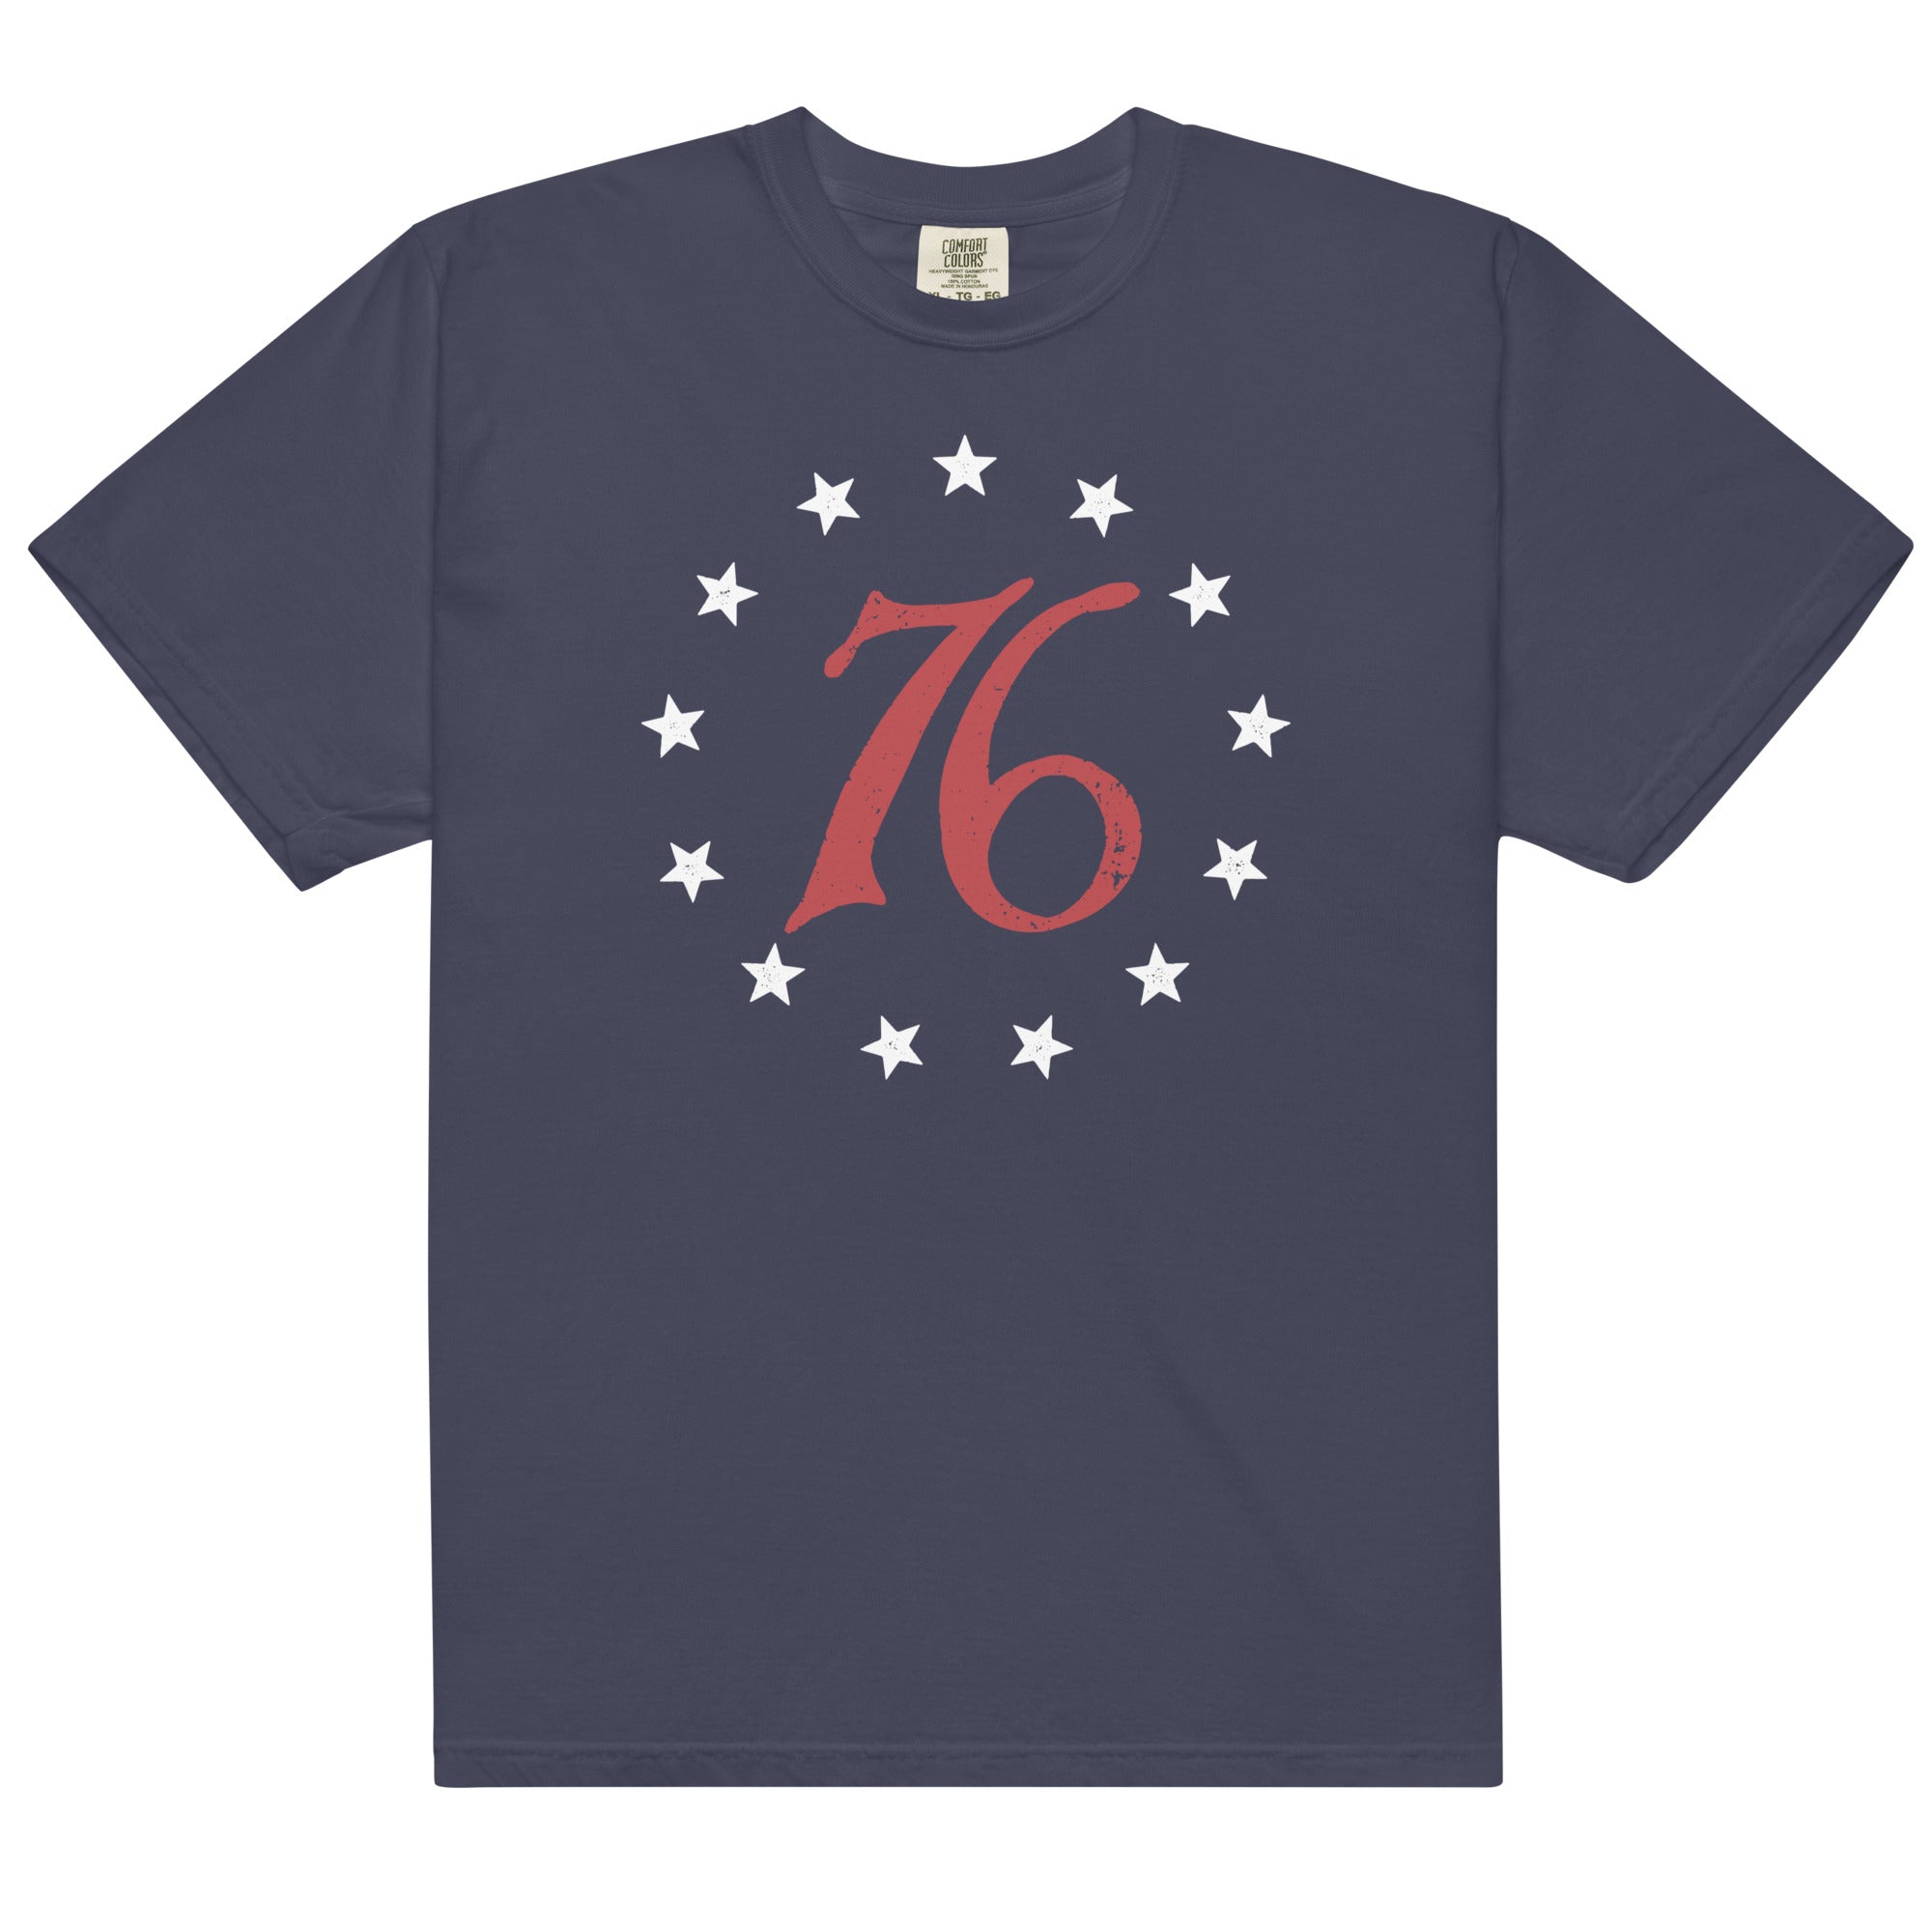 Spirit of 76 Garment-dyed Heavyweight T-Shirt